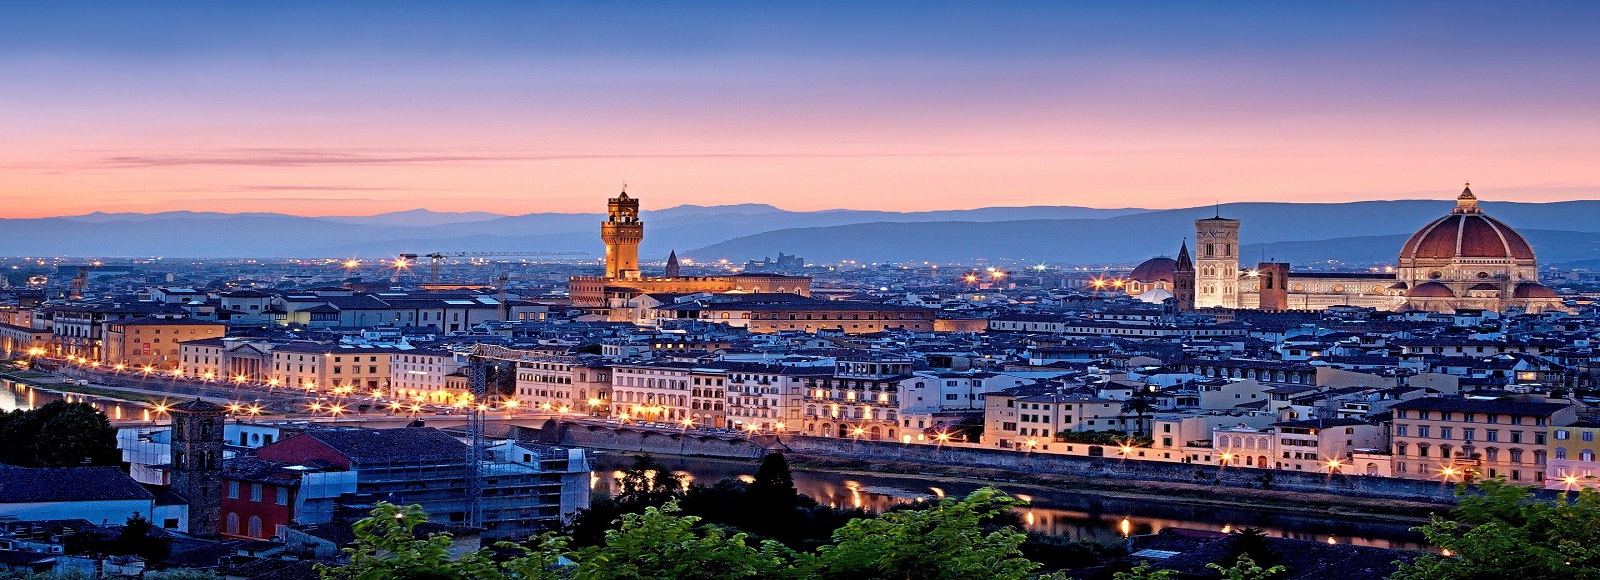 Ofertas de Traslados en Florencia. Traslados económicos en Florencia 